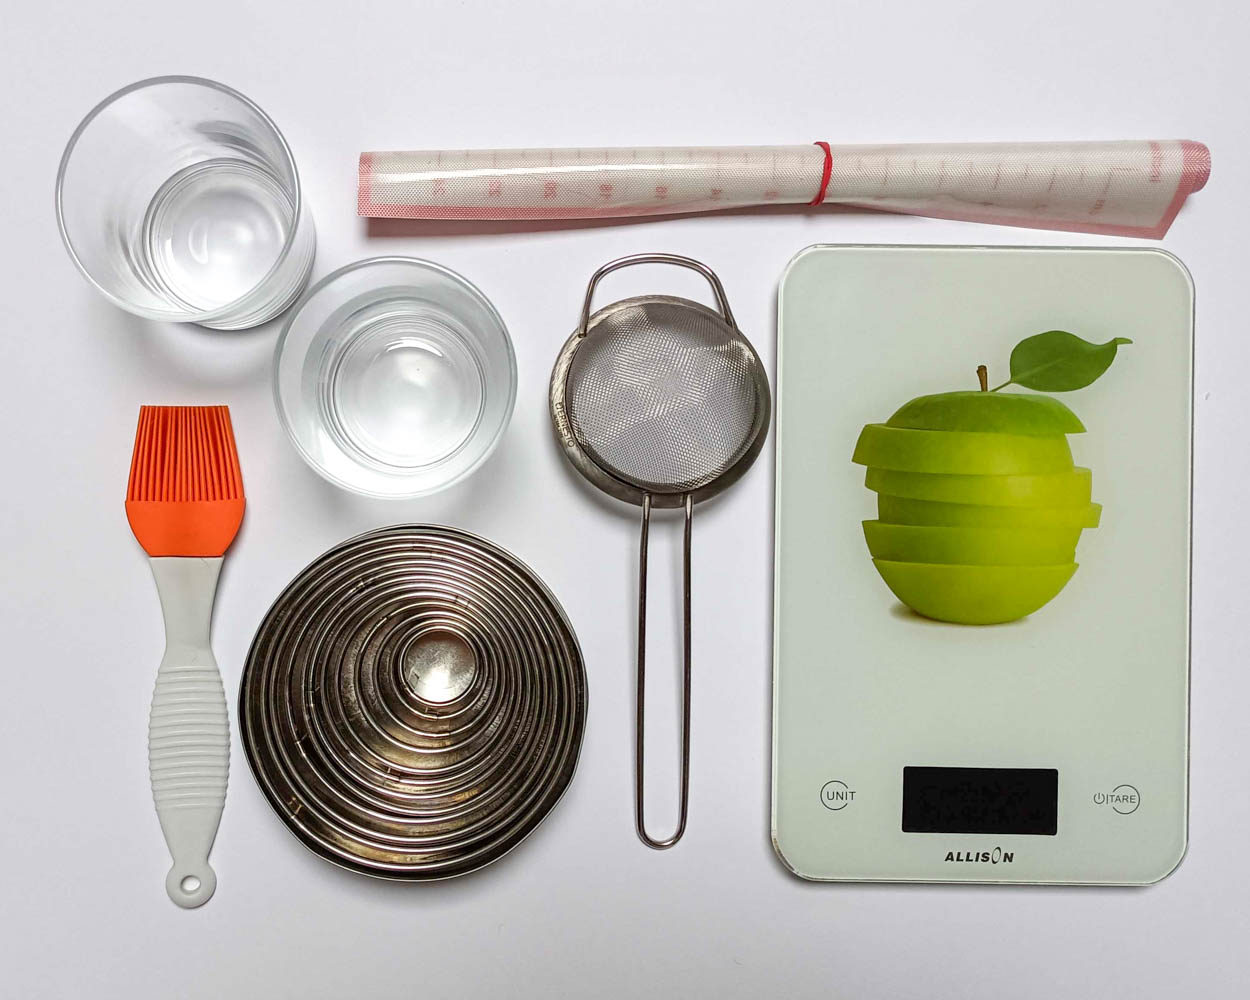 narzędzia do przygotowania pistacjowego tiramisu - waga kuchenna, sitko, mata silikonowa, pędzel silikonowy, szklaneczki lub słoiczki, okrągłe wykrawacze